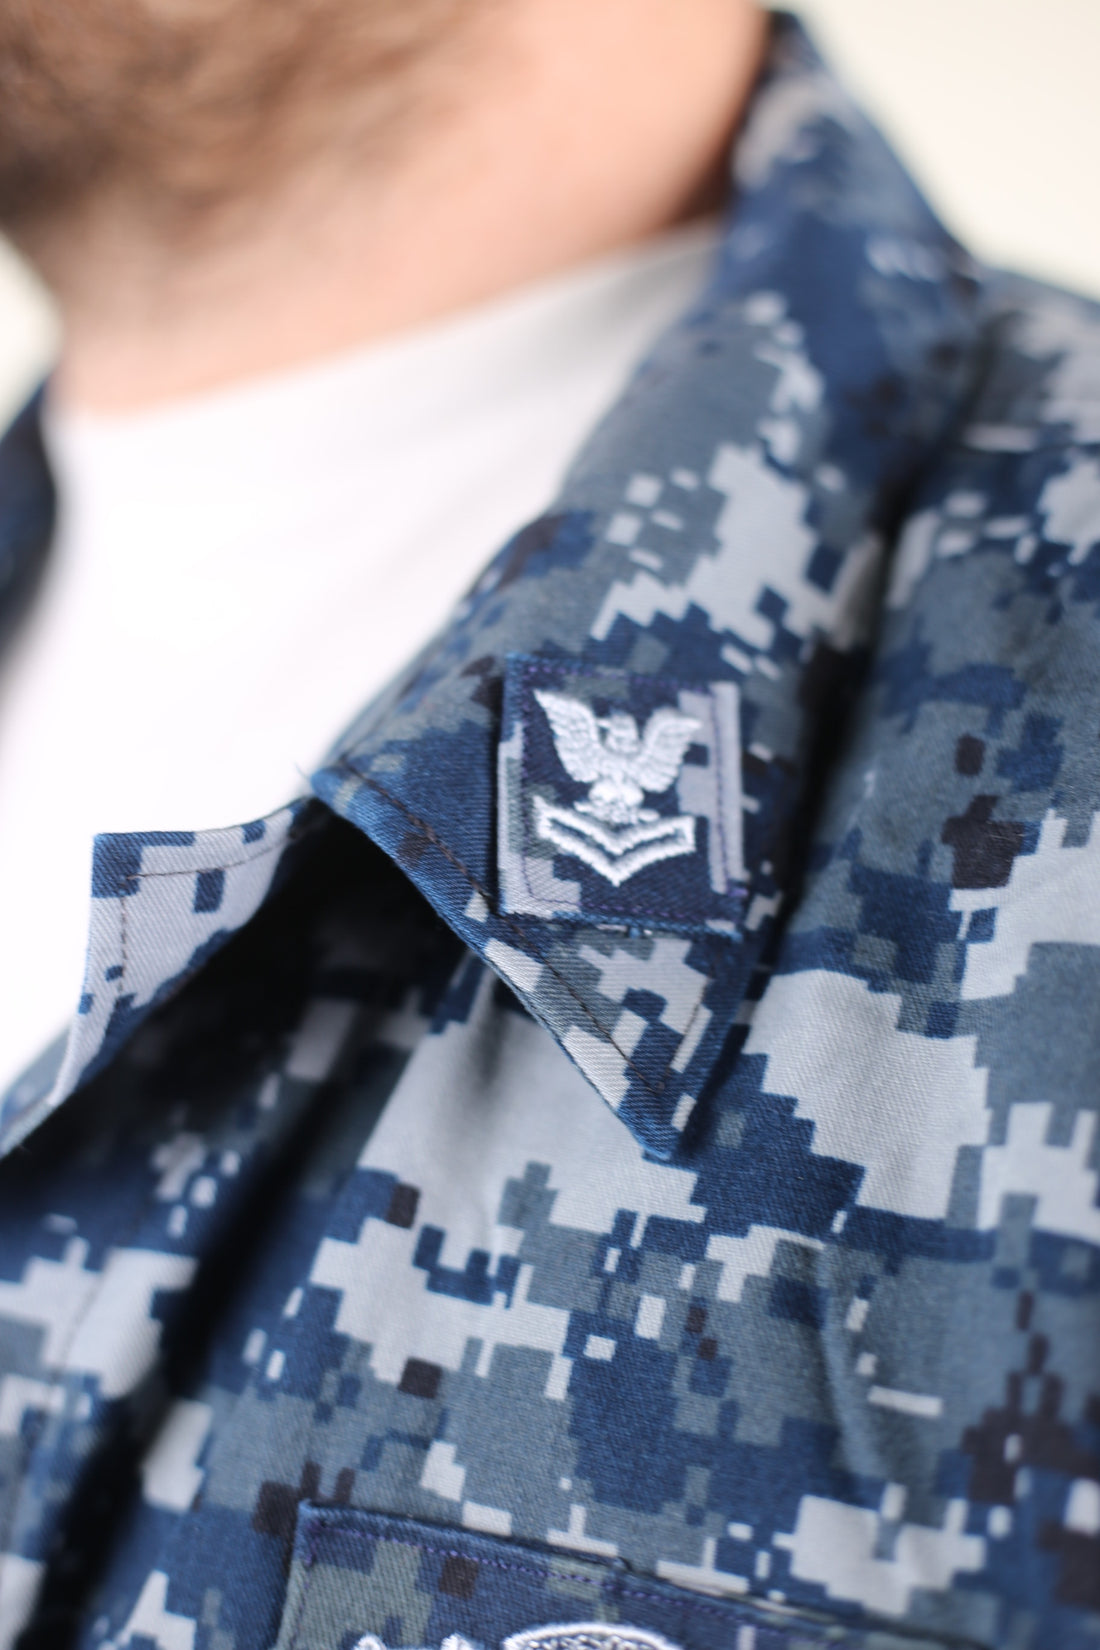 Marpat Us Navy Overshirt Shirt - L -